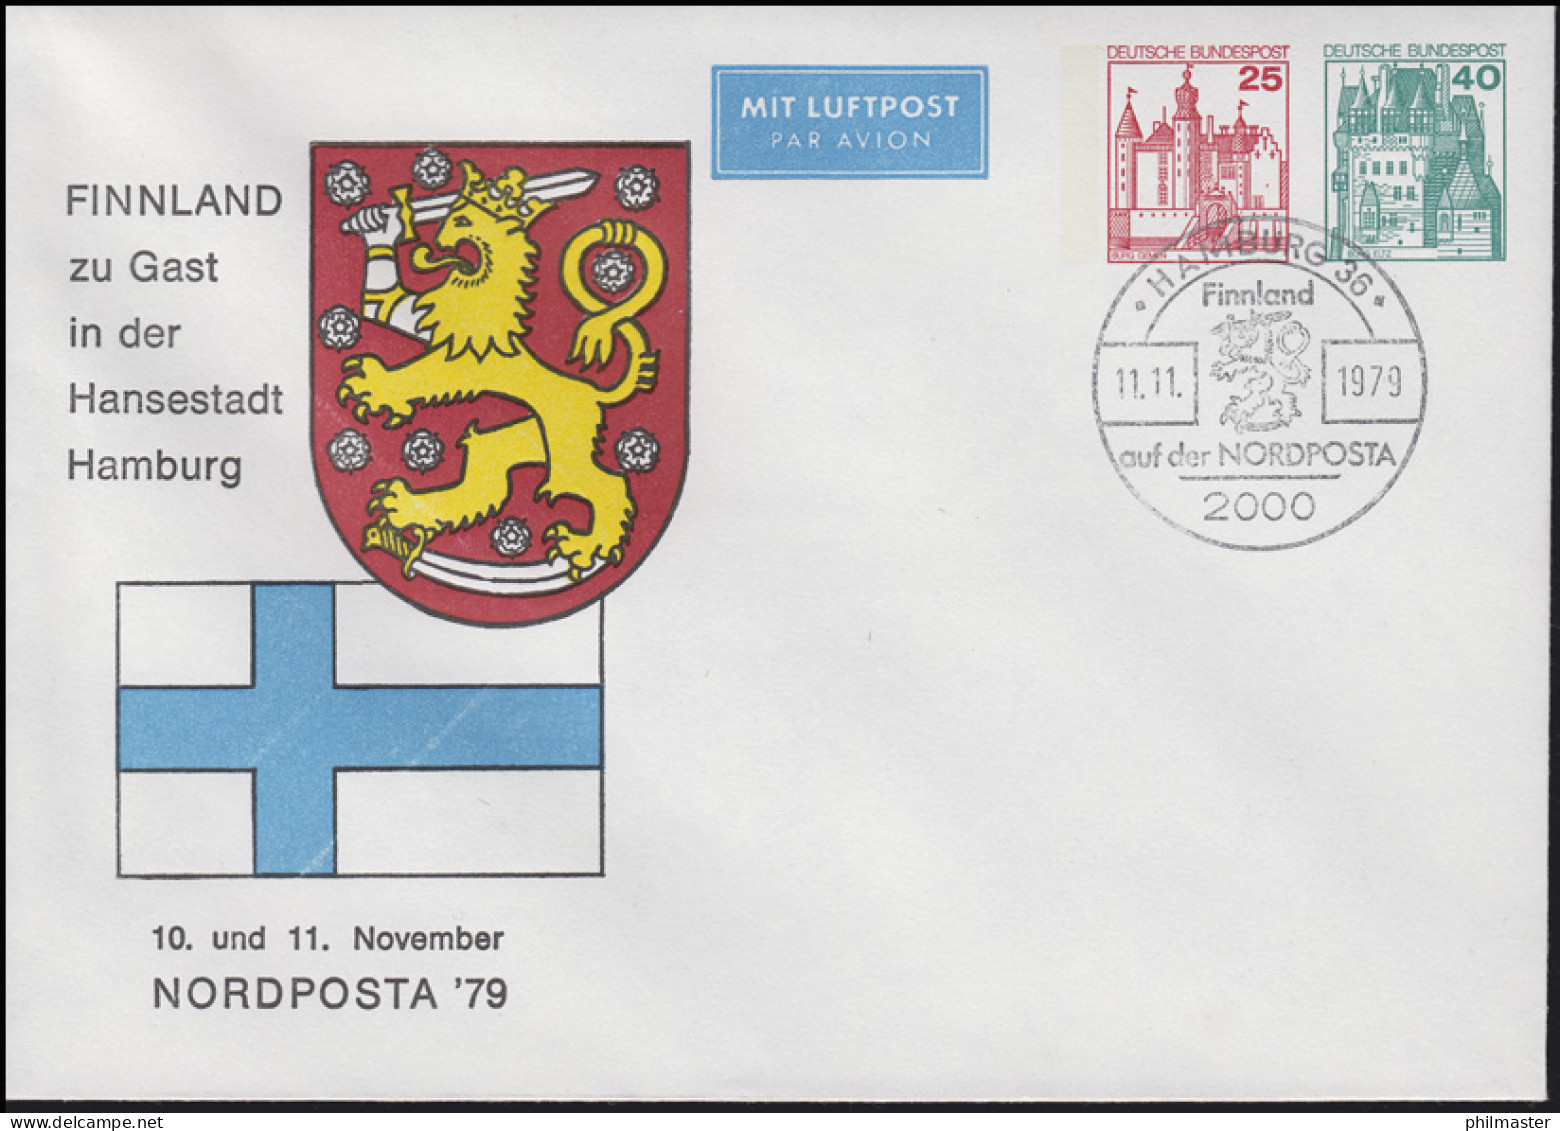 PU 180/2 Finnland Zu Gast In Hansestadt Hamburg SSt HAMBURG NORDPOSTA 11.11.1979 - Privatumschläge - Ungebraucht